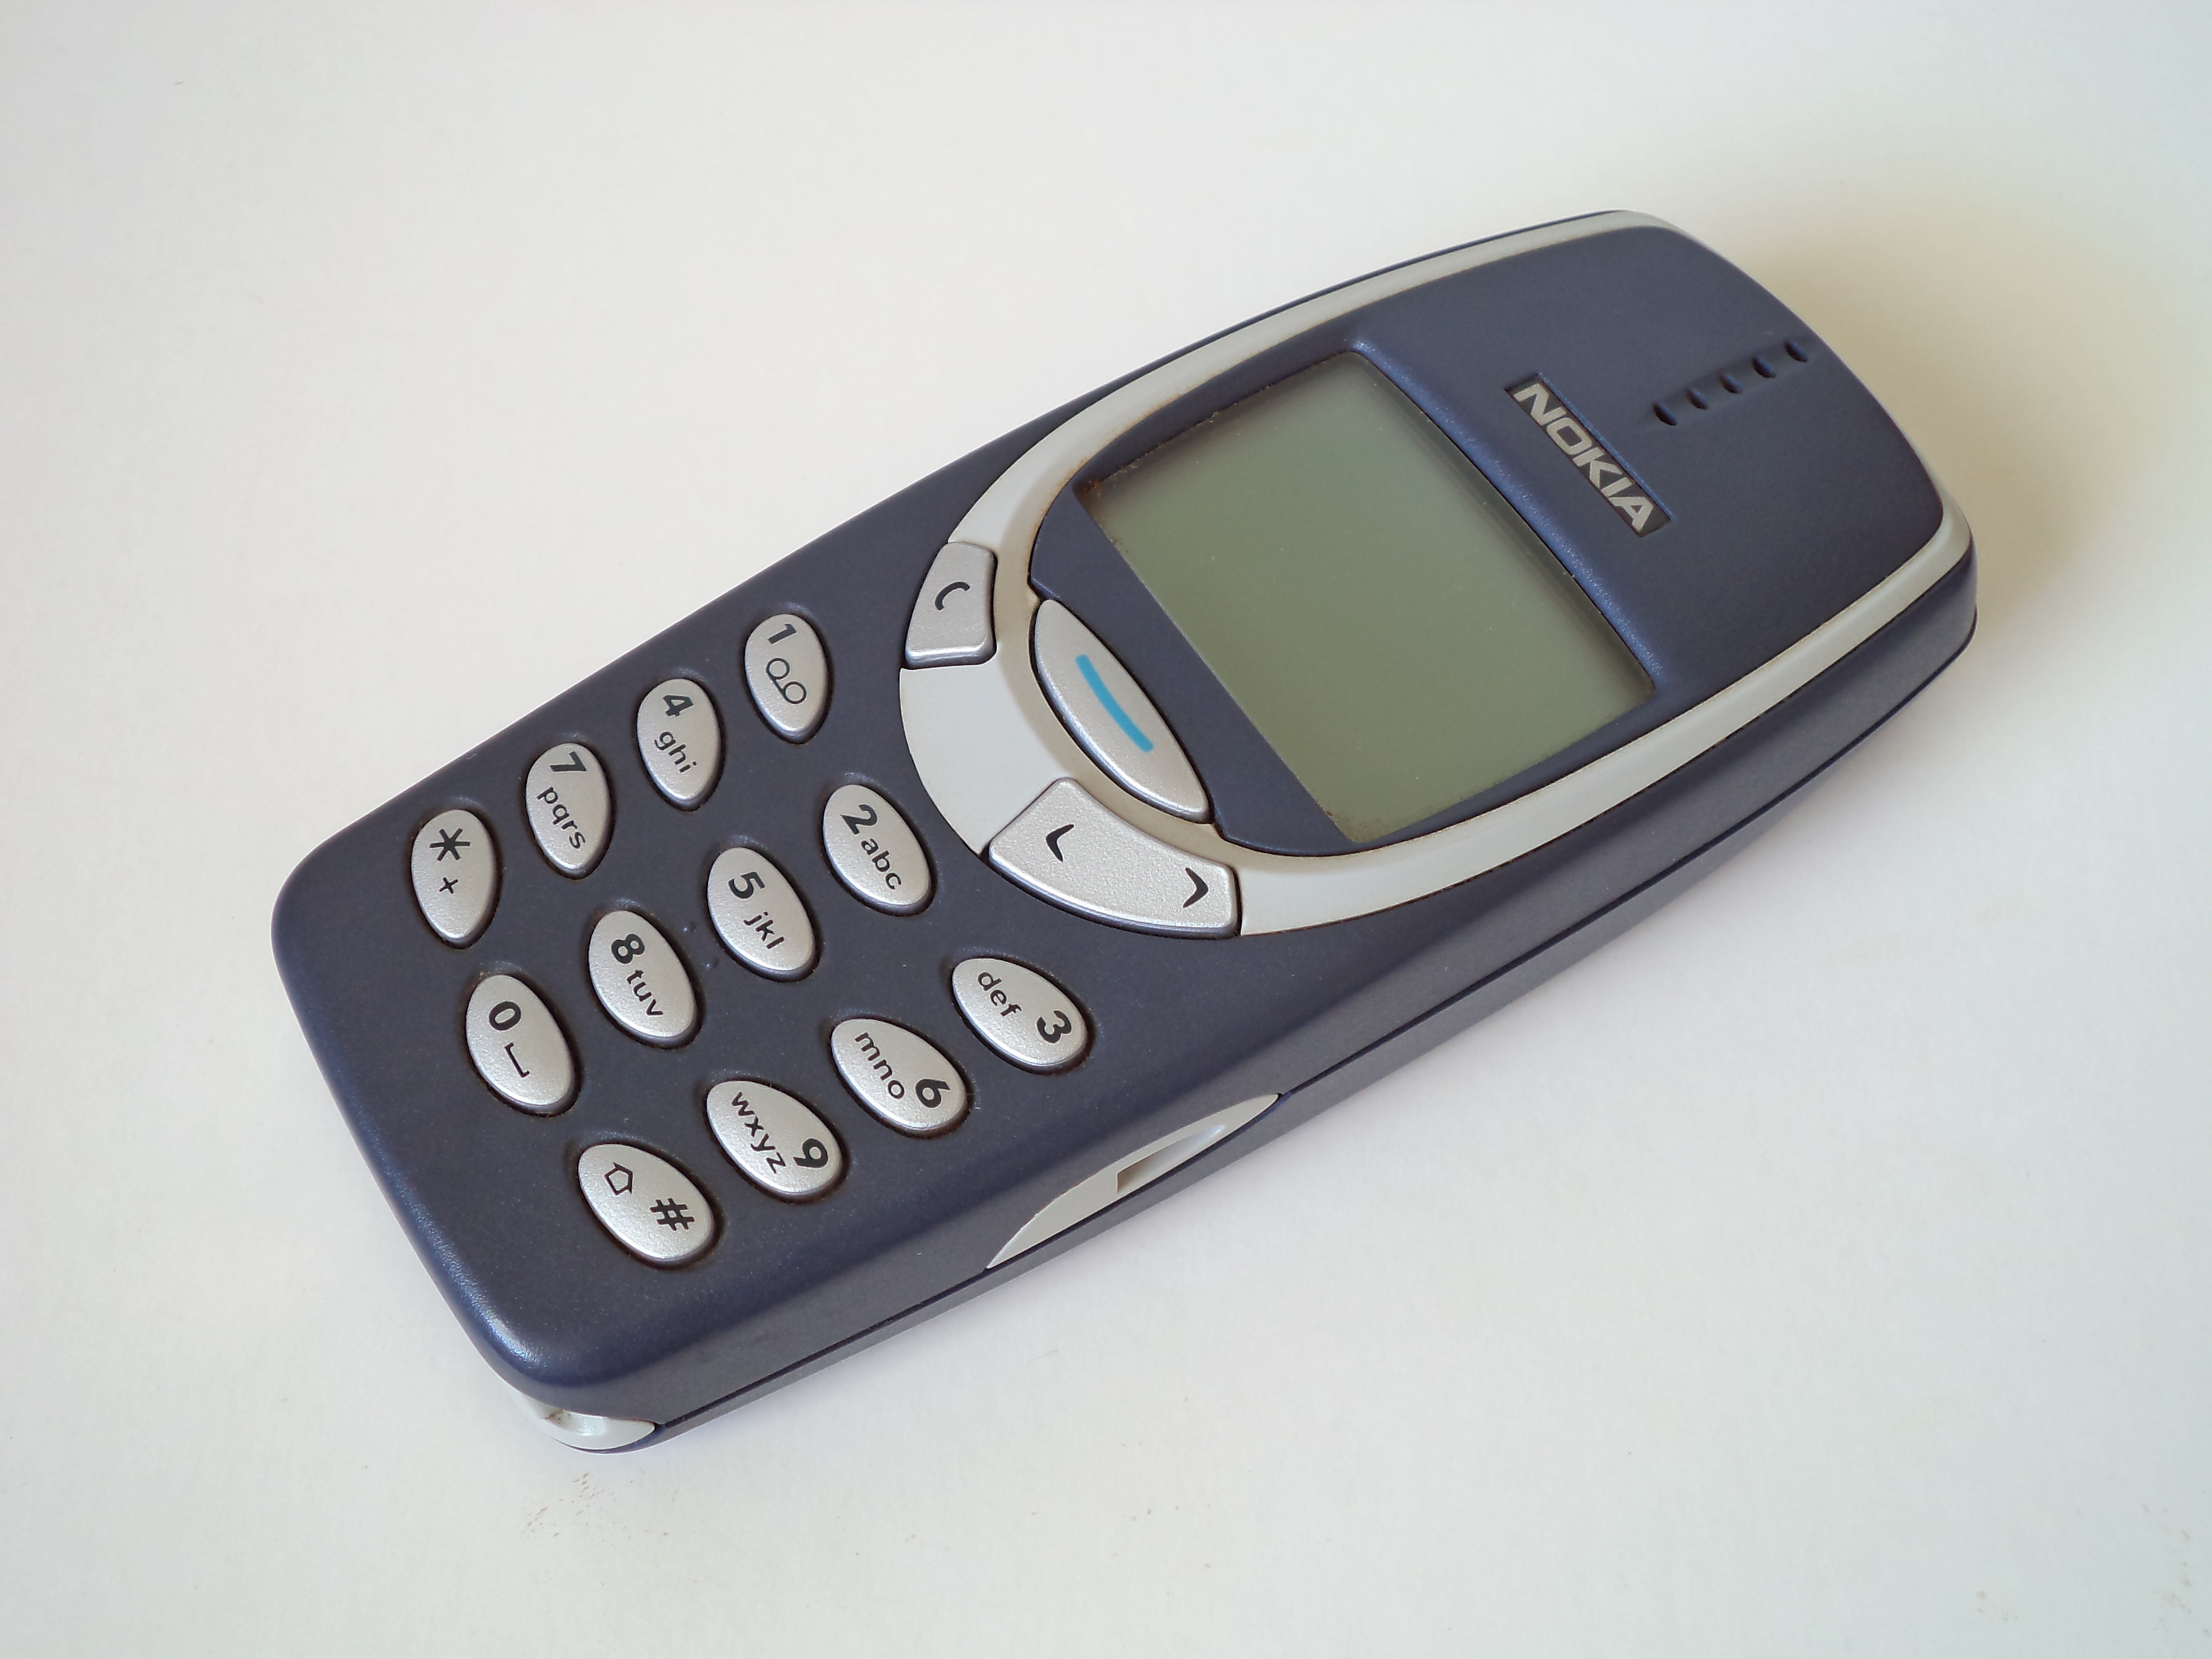 blue Nokia 3310